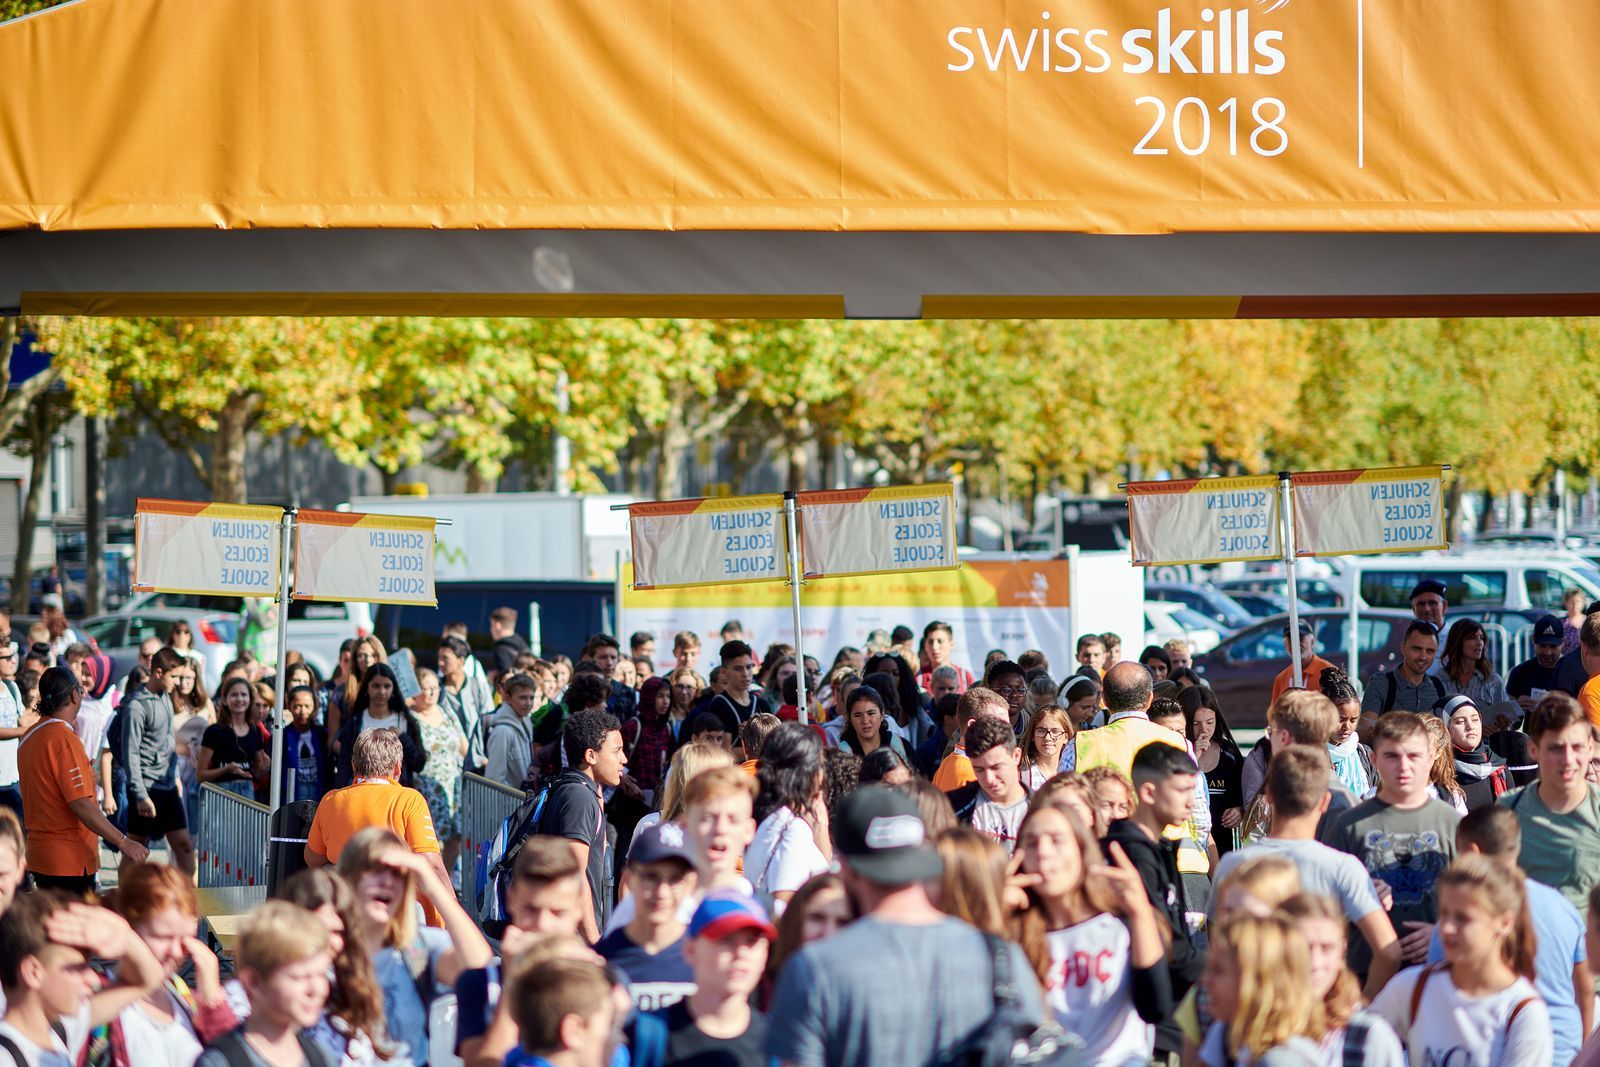 Les SwissSkills 2018 avaient réunis 120'000 visiteurs à Berne, durant cinq jours